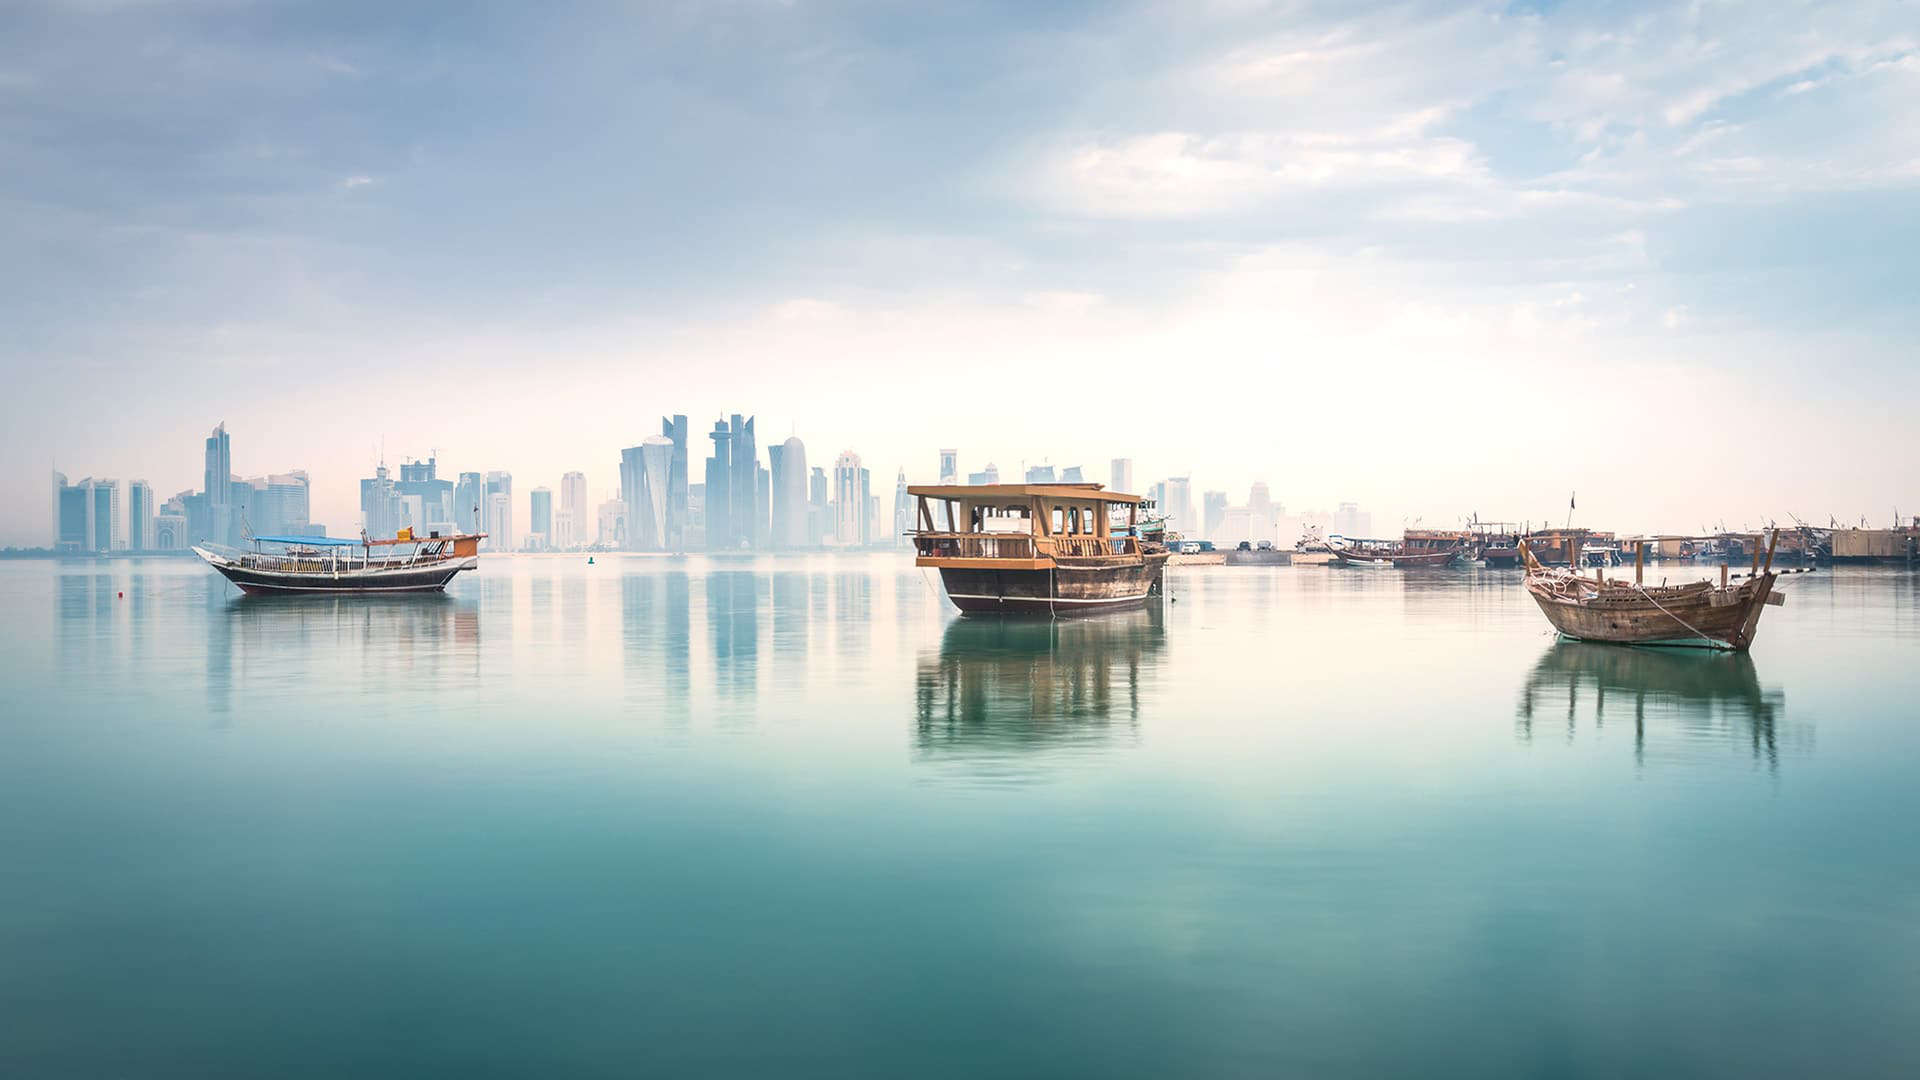 waterfront views at the pearl qatar